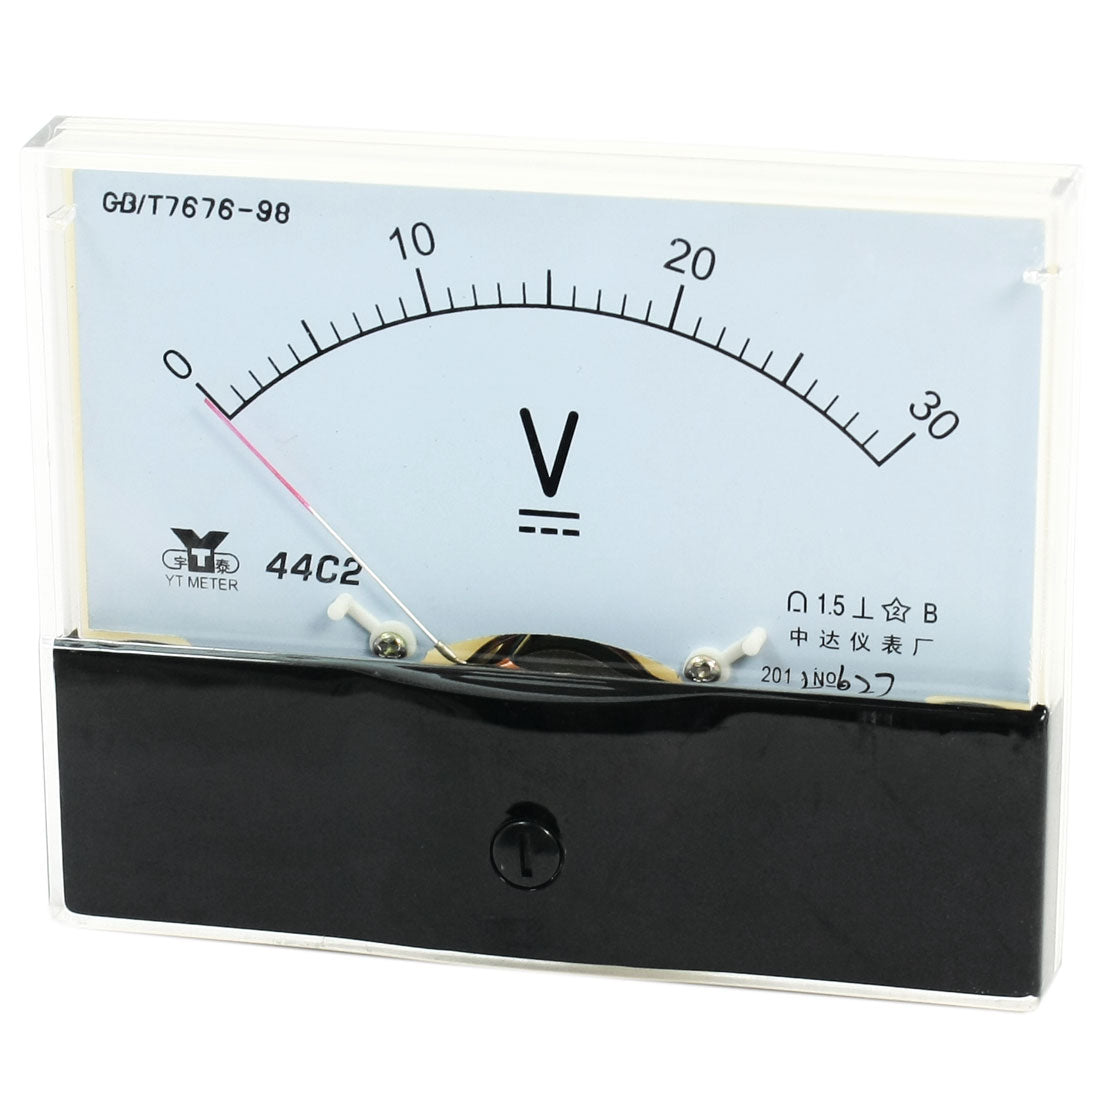 uxcell Uxcell Rectangle Measurement Tool Analog Panel Voltmeter Volt Meter DC 0 - 30V Measuring Range 44C2